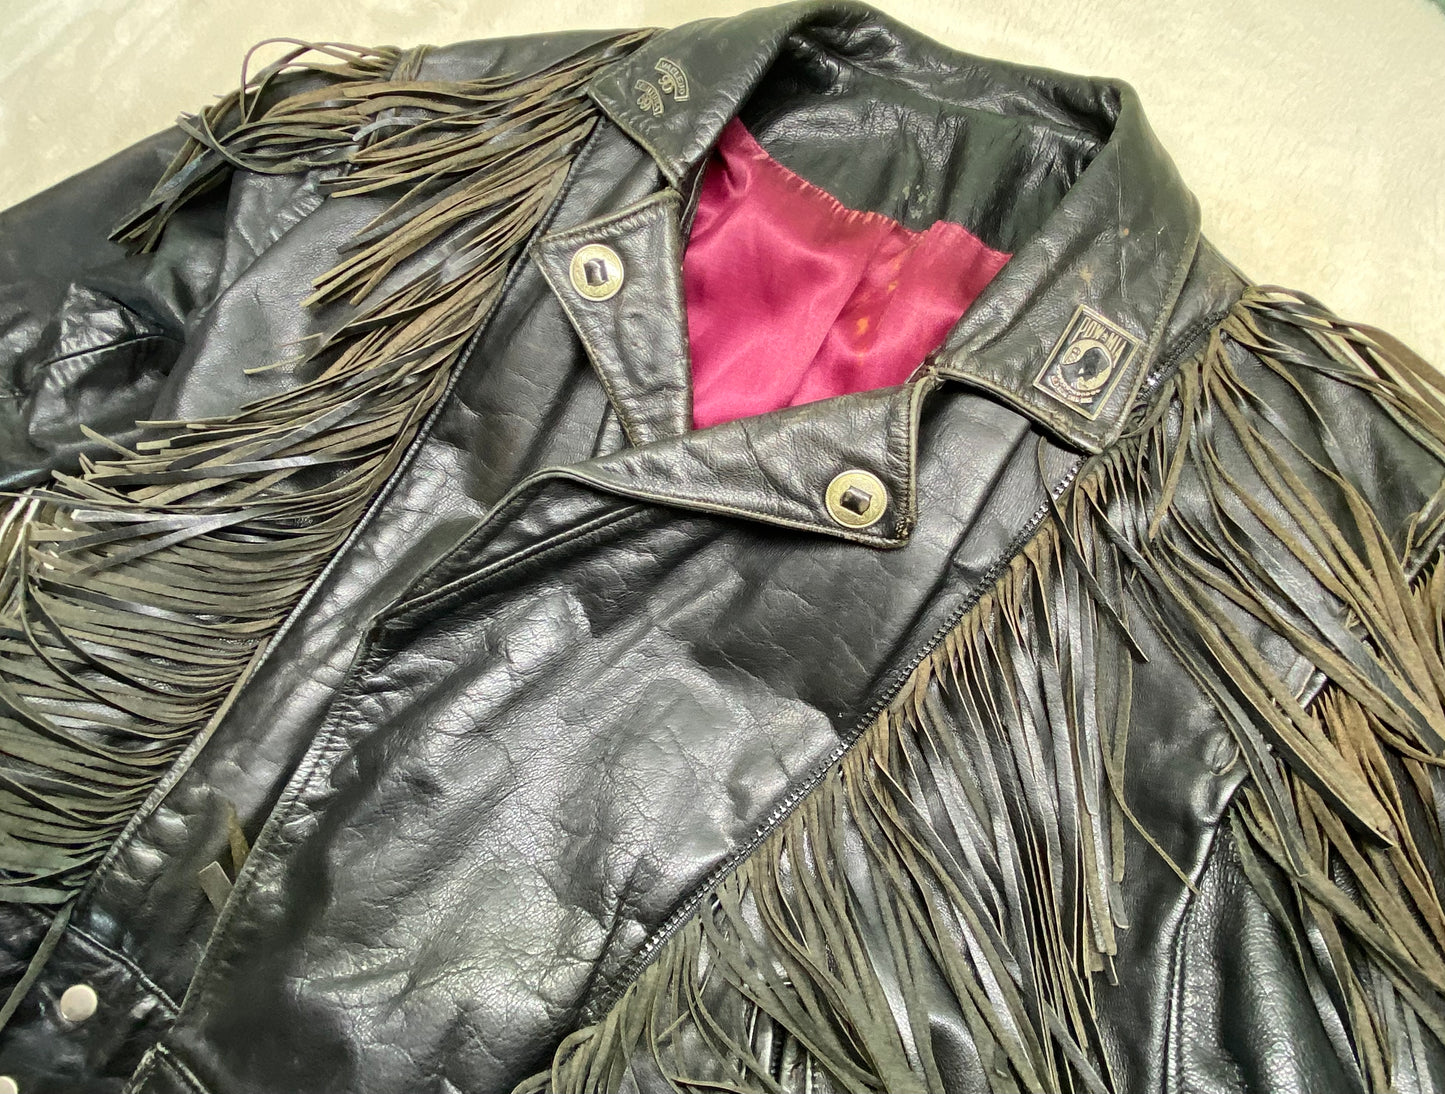 1970's Biker Jacket w/ fringe & conchos